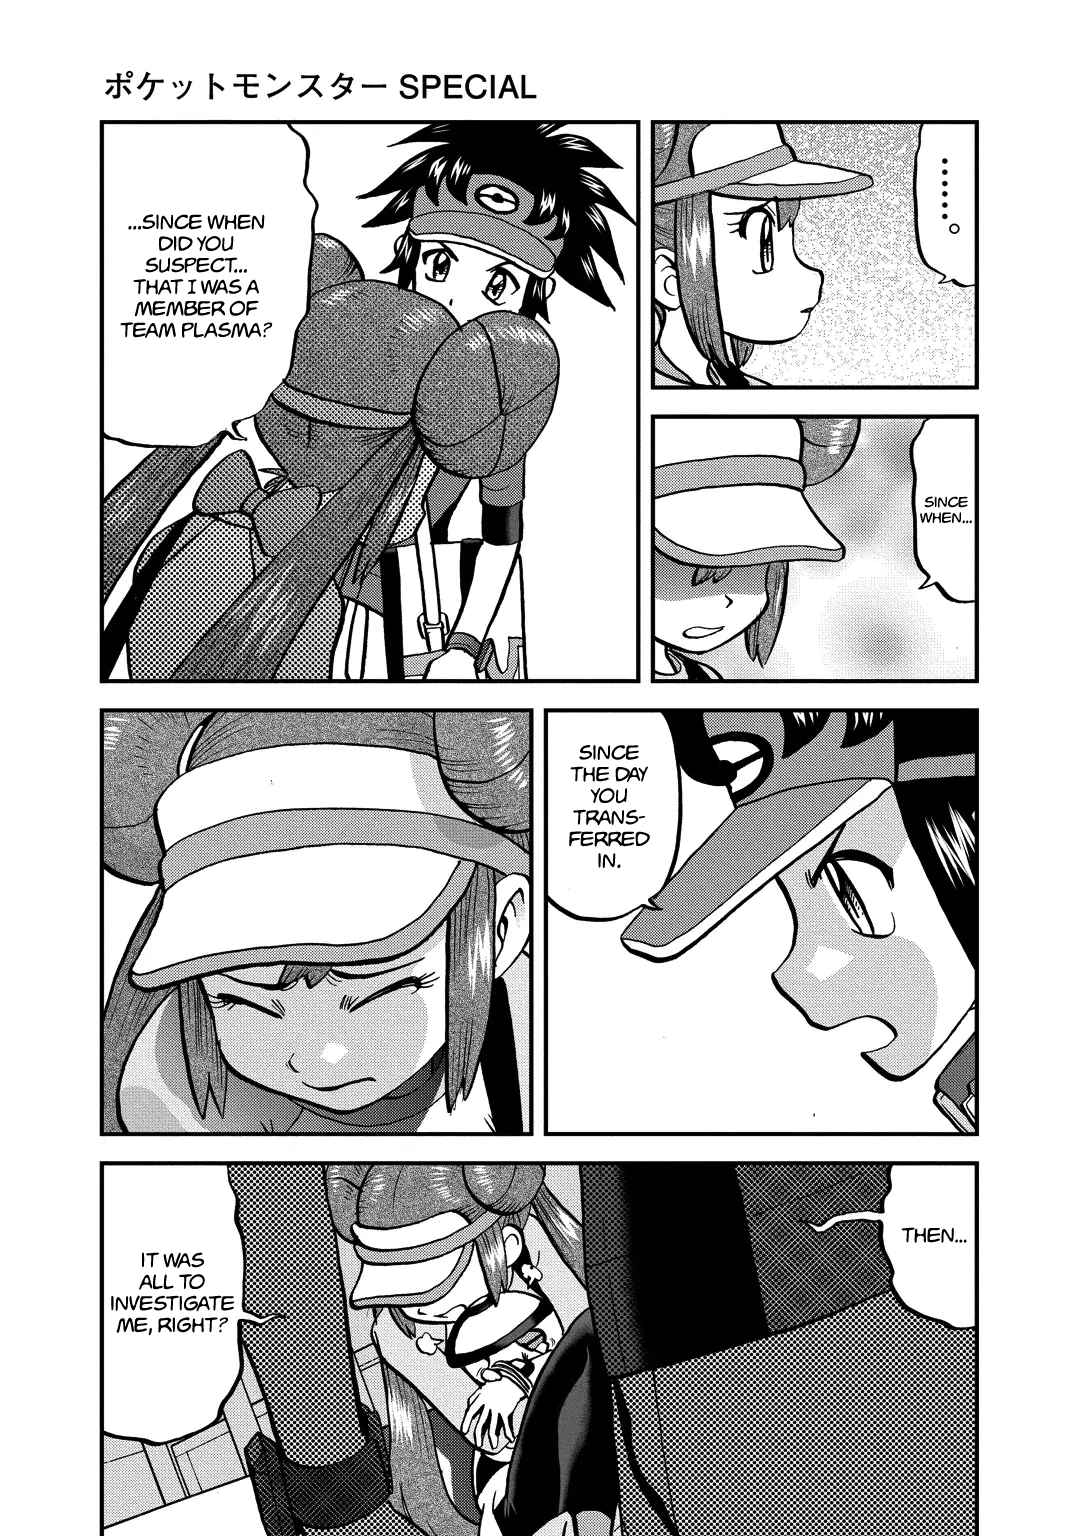 Pokémon Special Vol. 53 Ch. 540